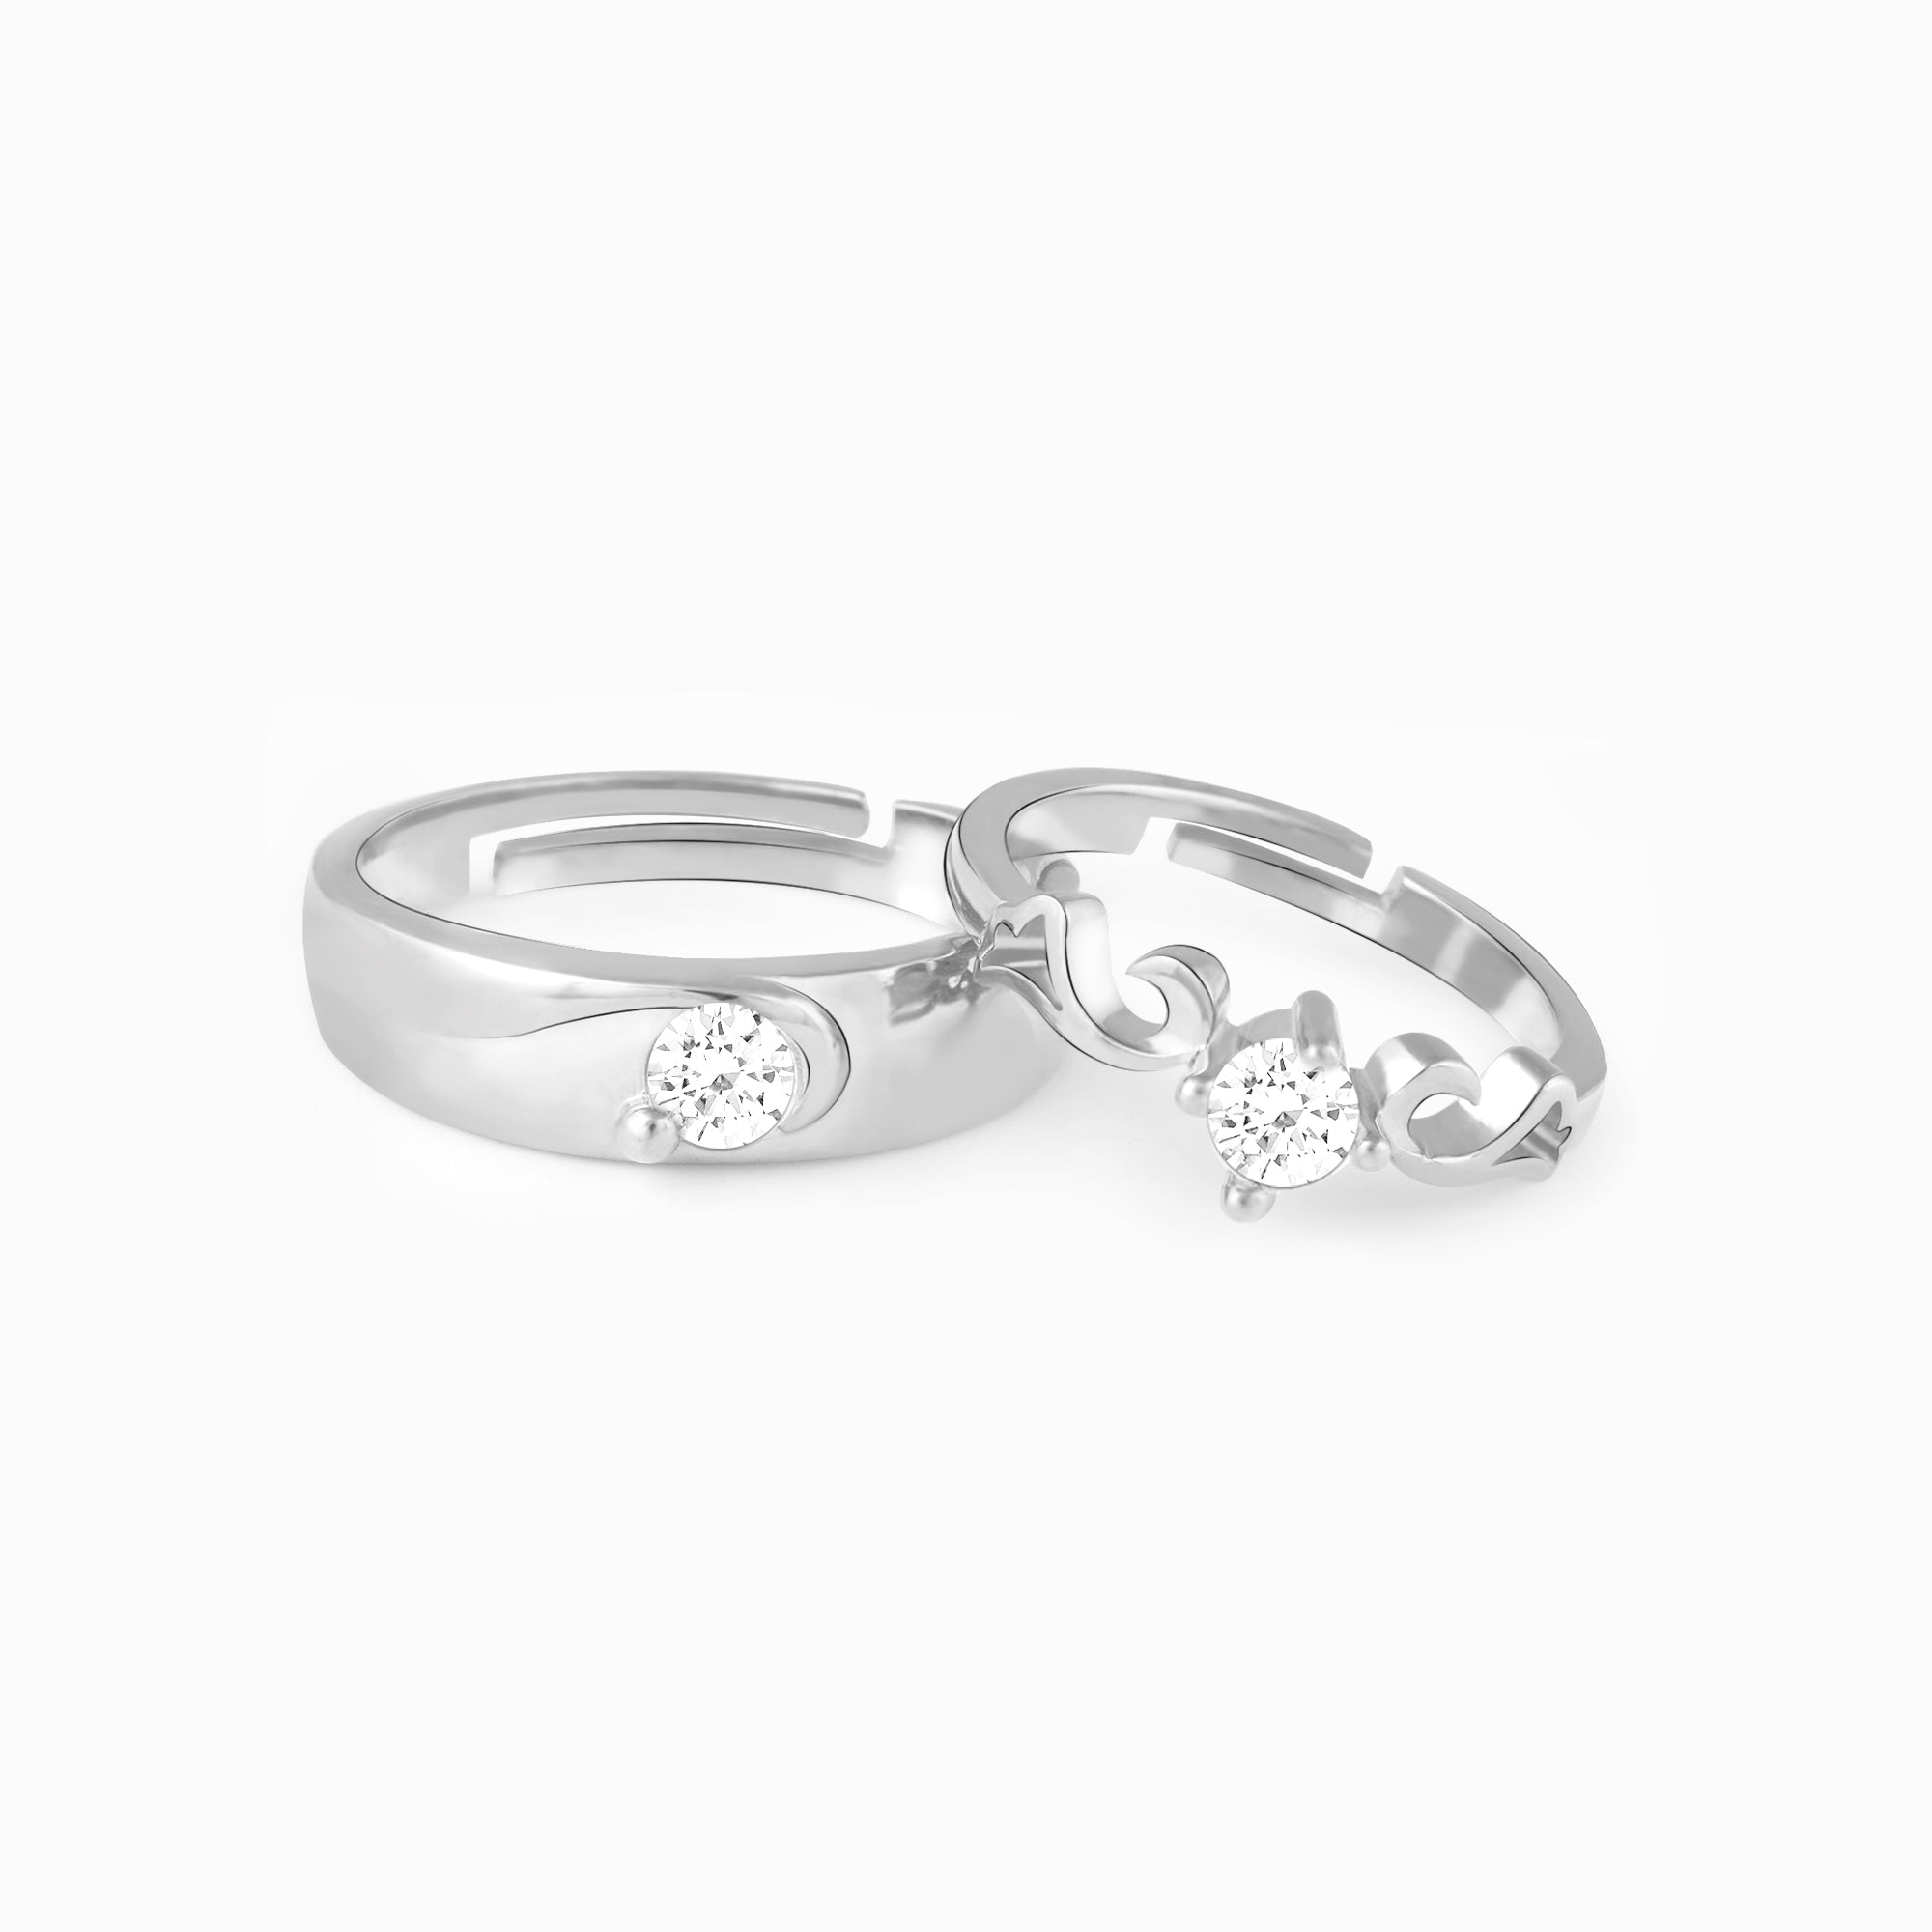 Vxddy Couple Rings Matching Adjustable Promise Ring India | Ubuy